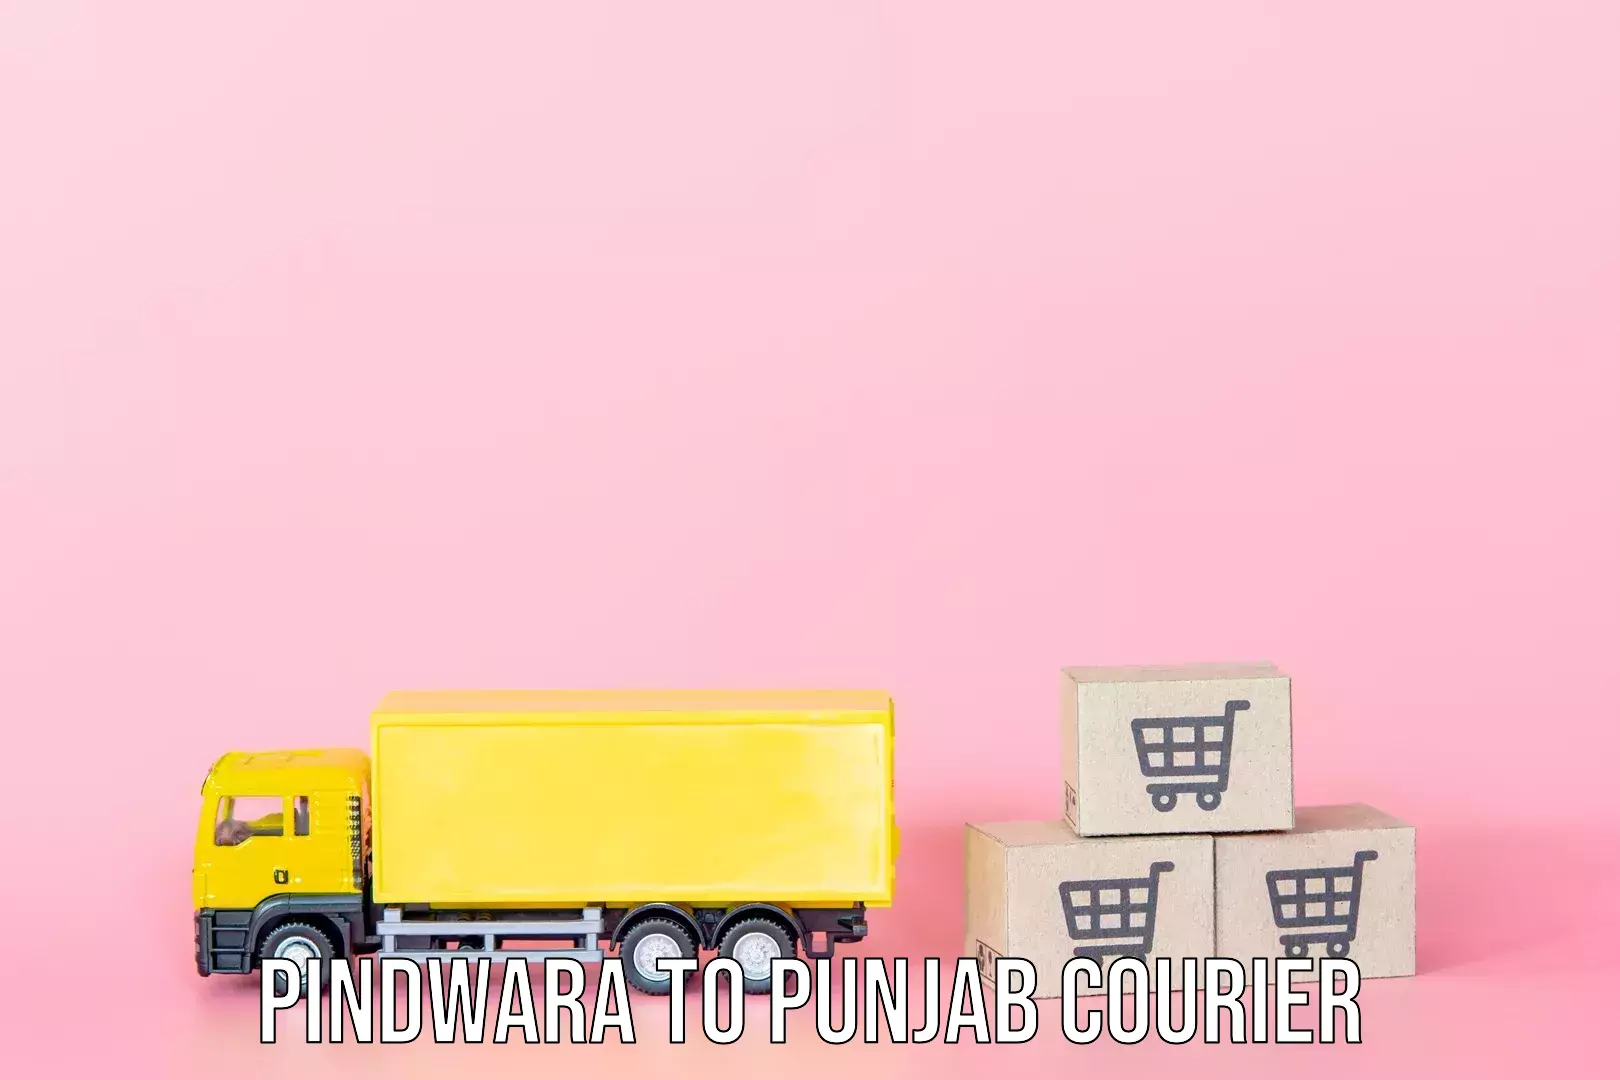 Luggage shipment logistics Pindwara to Central University of Punjab Bathinda